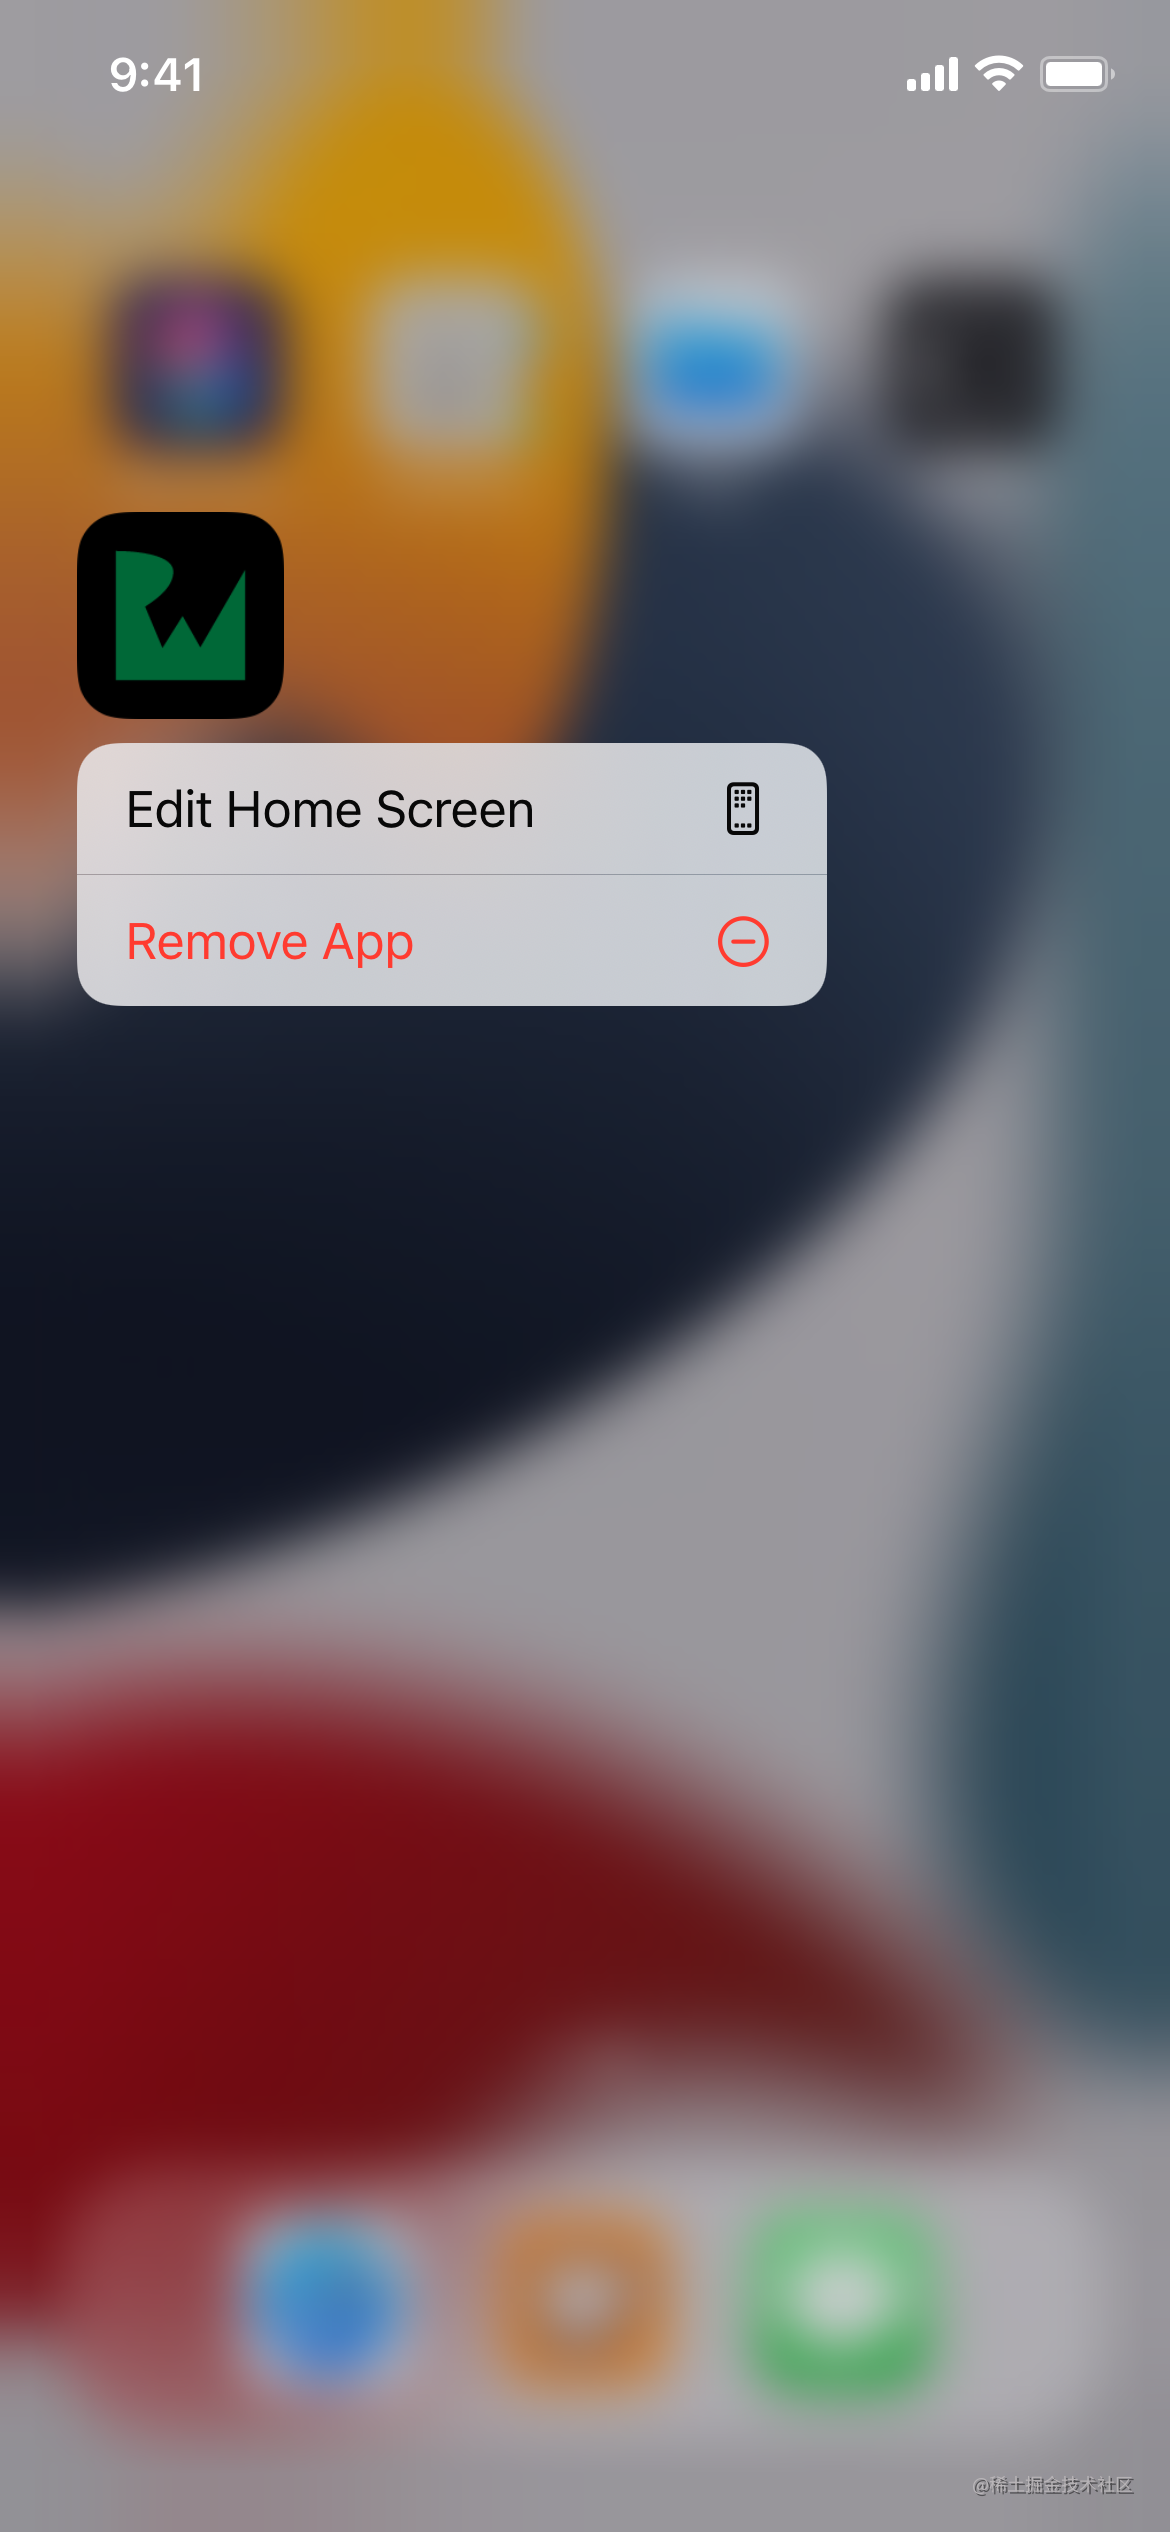 O menu que aparece depois de pressionar o ícone do aplicativo "Note Buddy" na tela inicial contém opções para "editar" a tela inicial ou "excluir" o aplicativo.